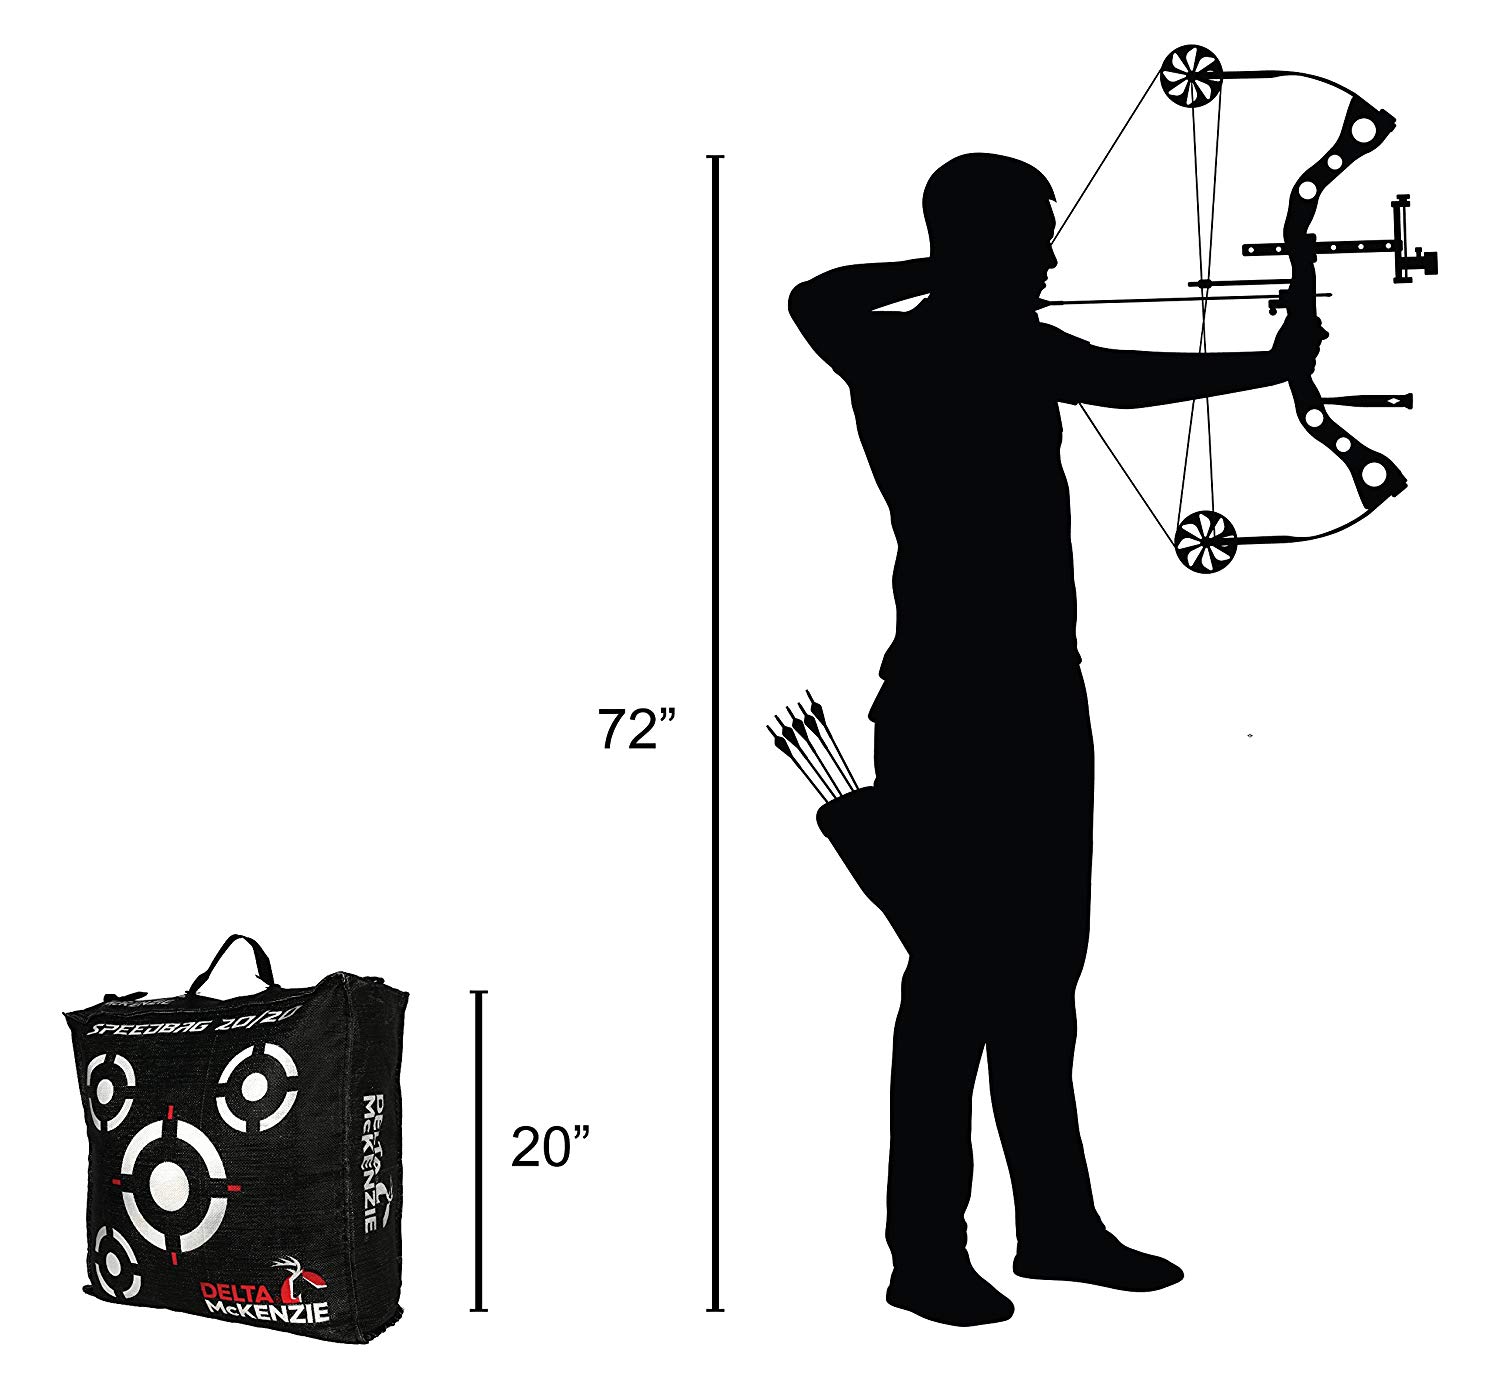 New Delta McKenzie Speedbag 20/20 Archery Target Black | eBay